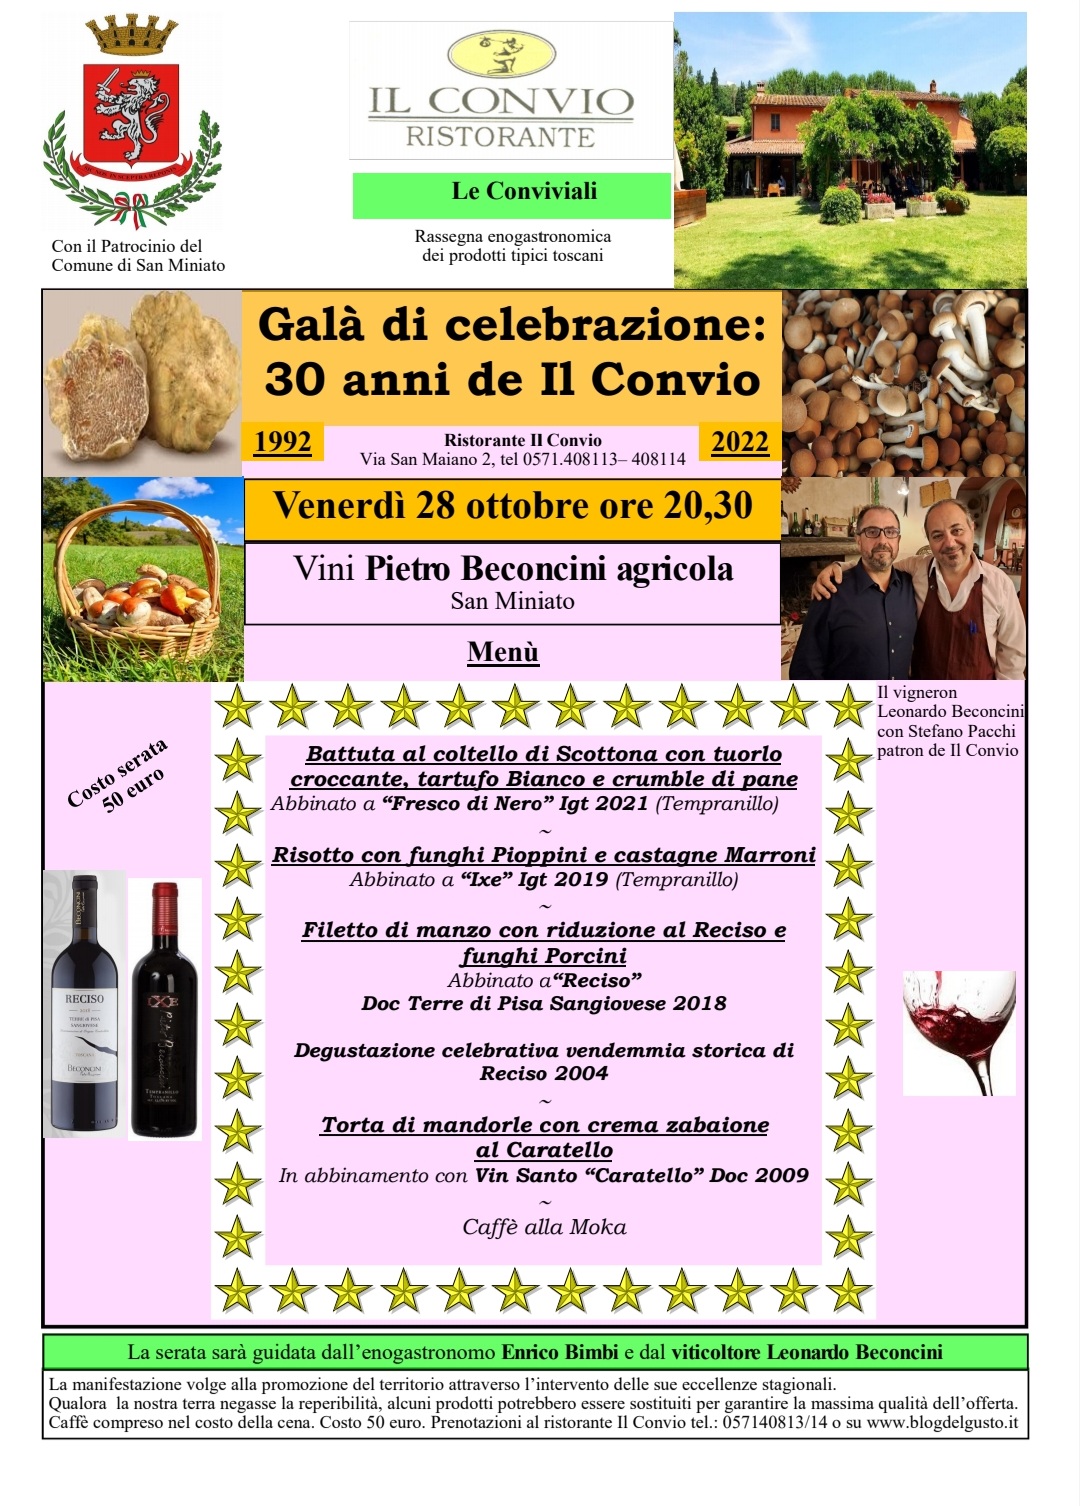 Cena spettacolare per i 30 anni de Il Convio con i grandi vini della Pietro Beconcini